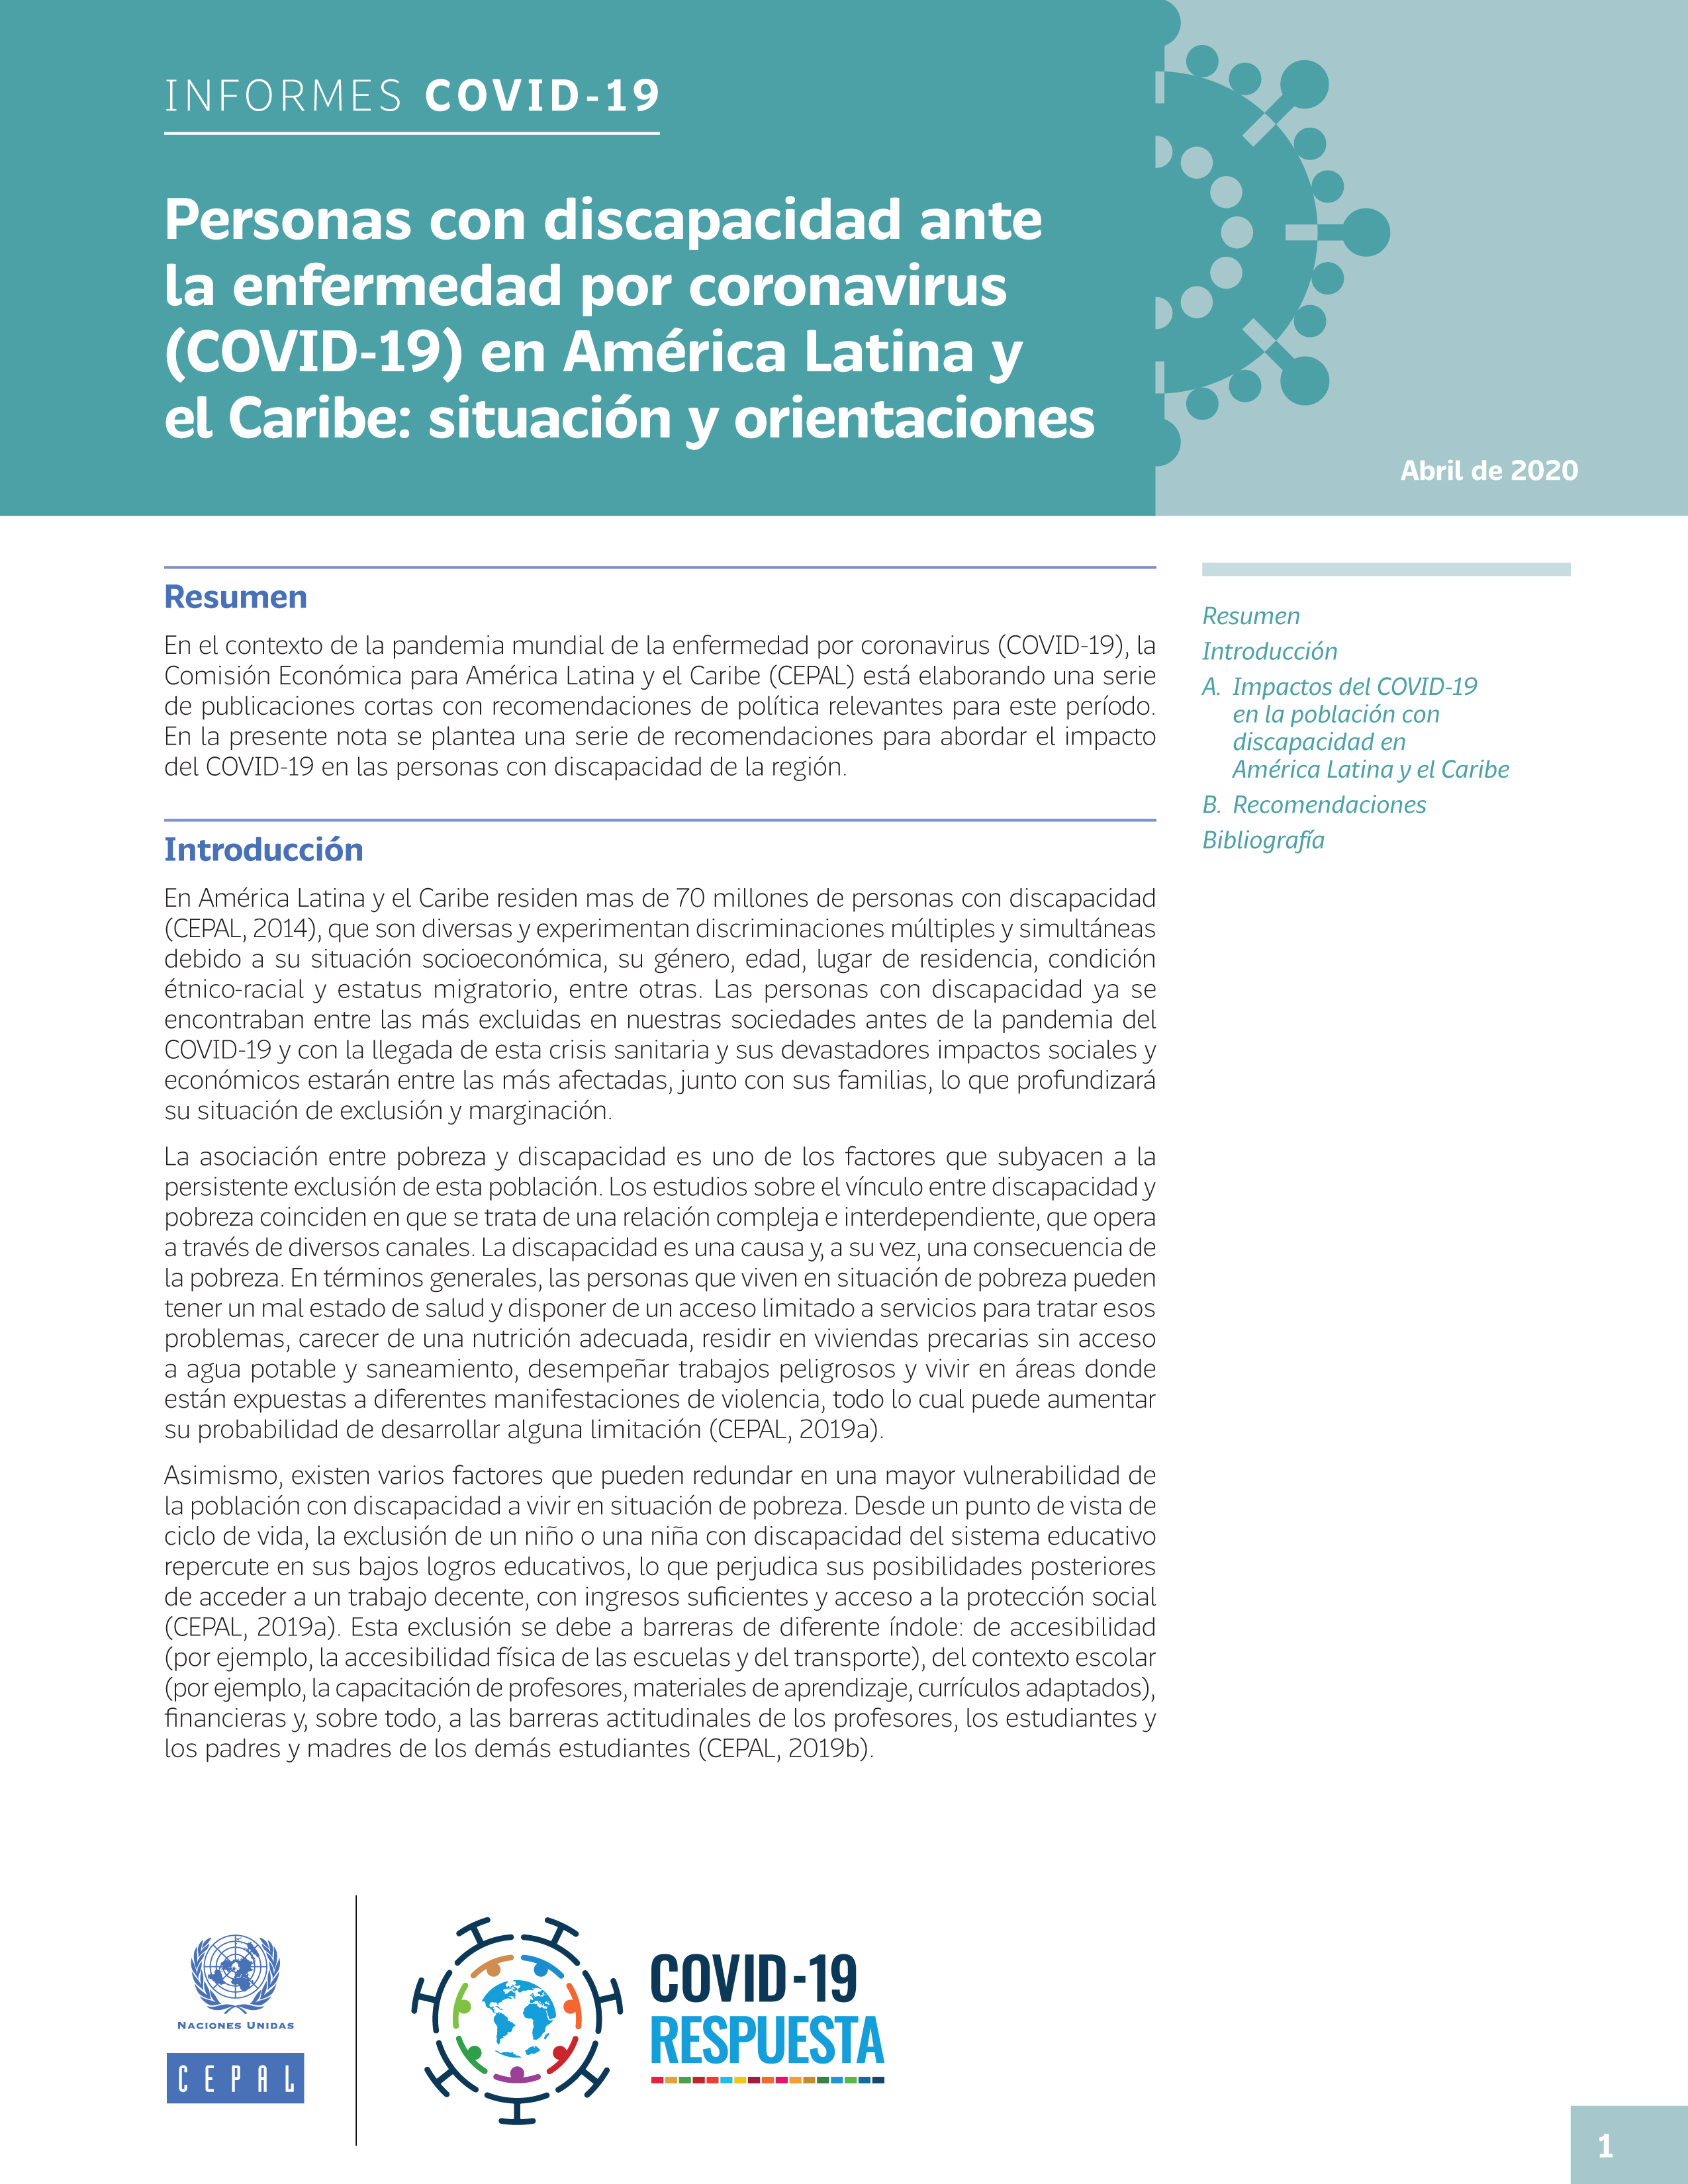 image of Personas con discapacidad ante la enfermedad por coronavirus (COVID-19) en América Latina y el Caribe: situación y orientaciones